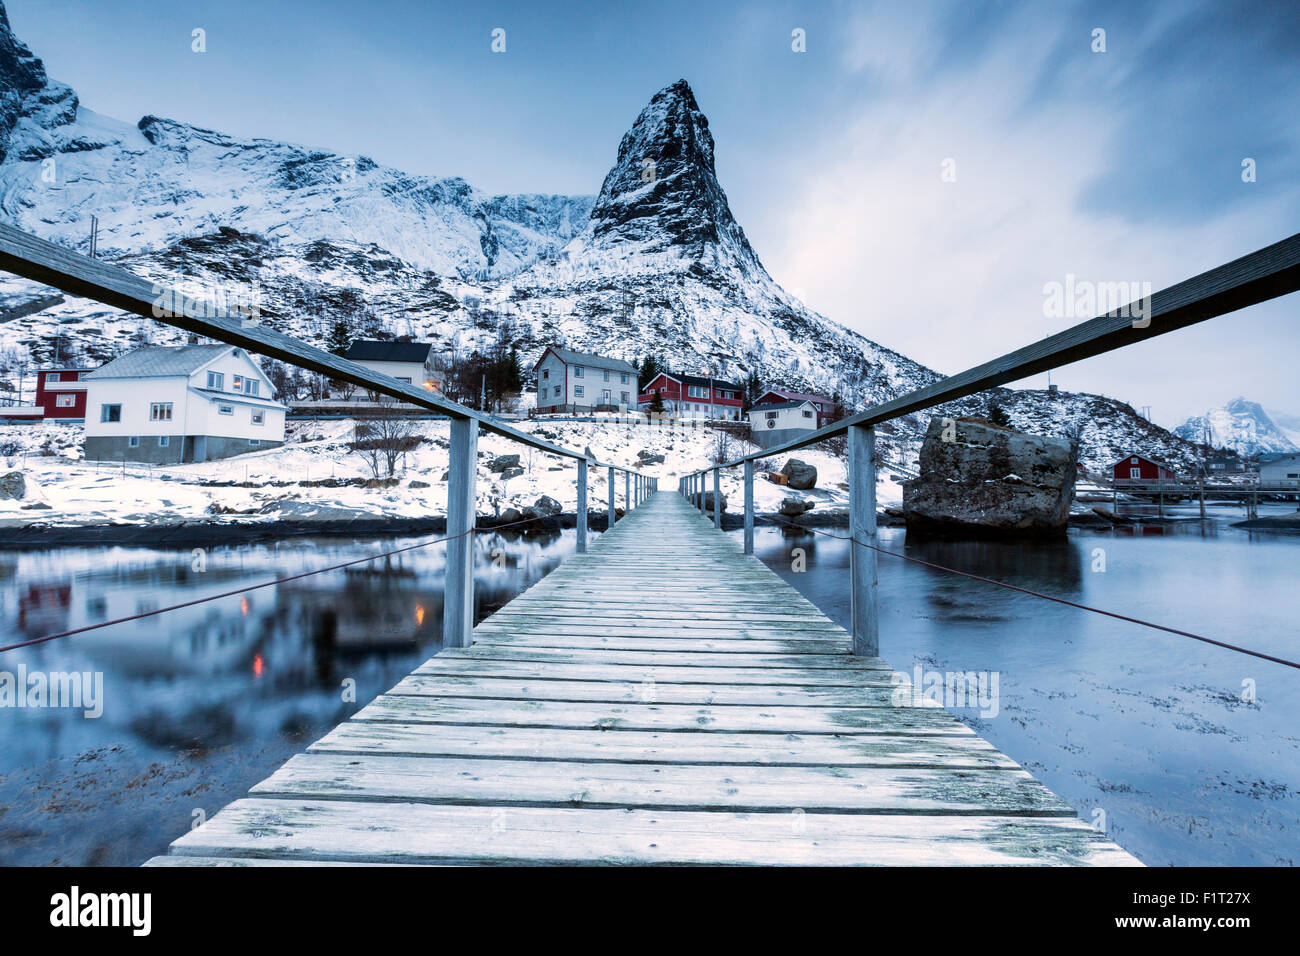 Eine Brücke über dem kalten Meer verbindet ein typisches Fischerdorf. Reine, Lofoten-Inseln, Nord-Norwegen, Skandinavien, Arktis Stockfoto